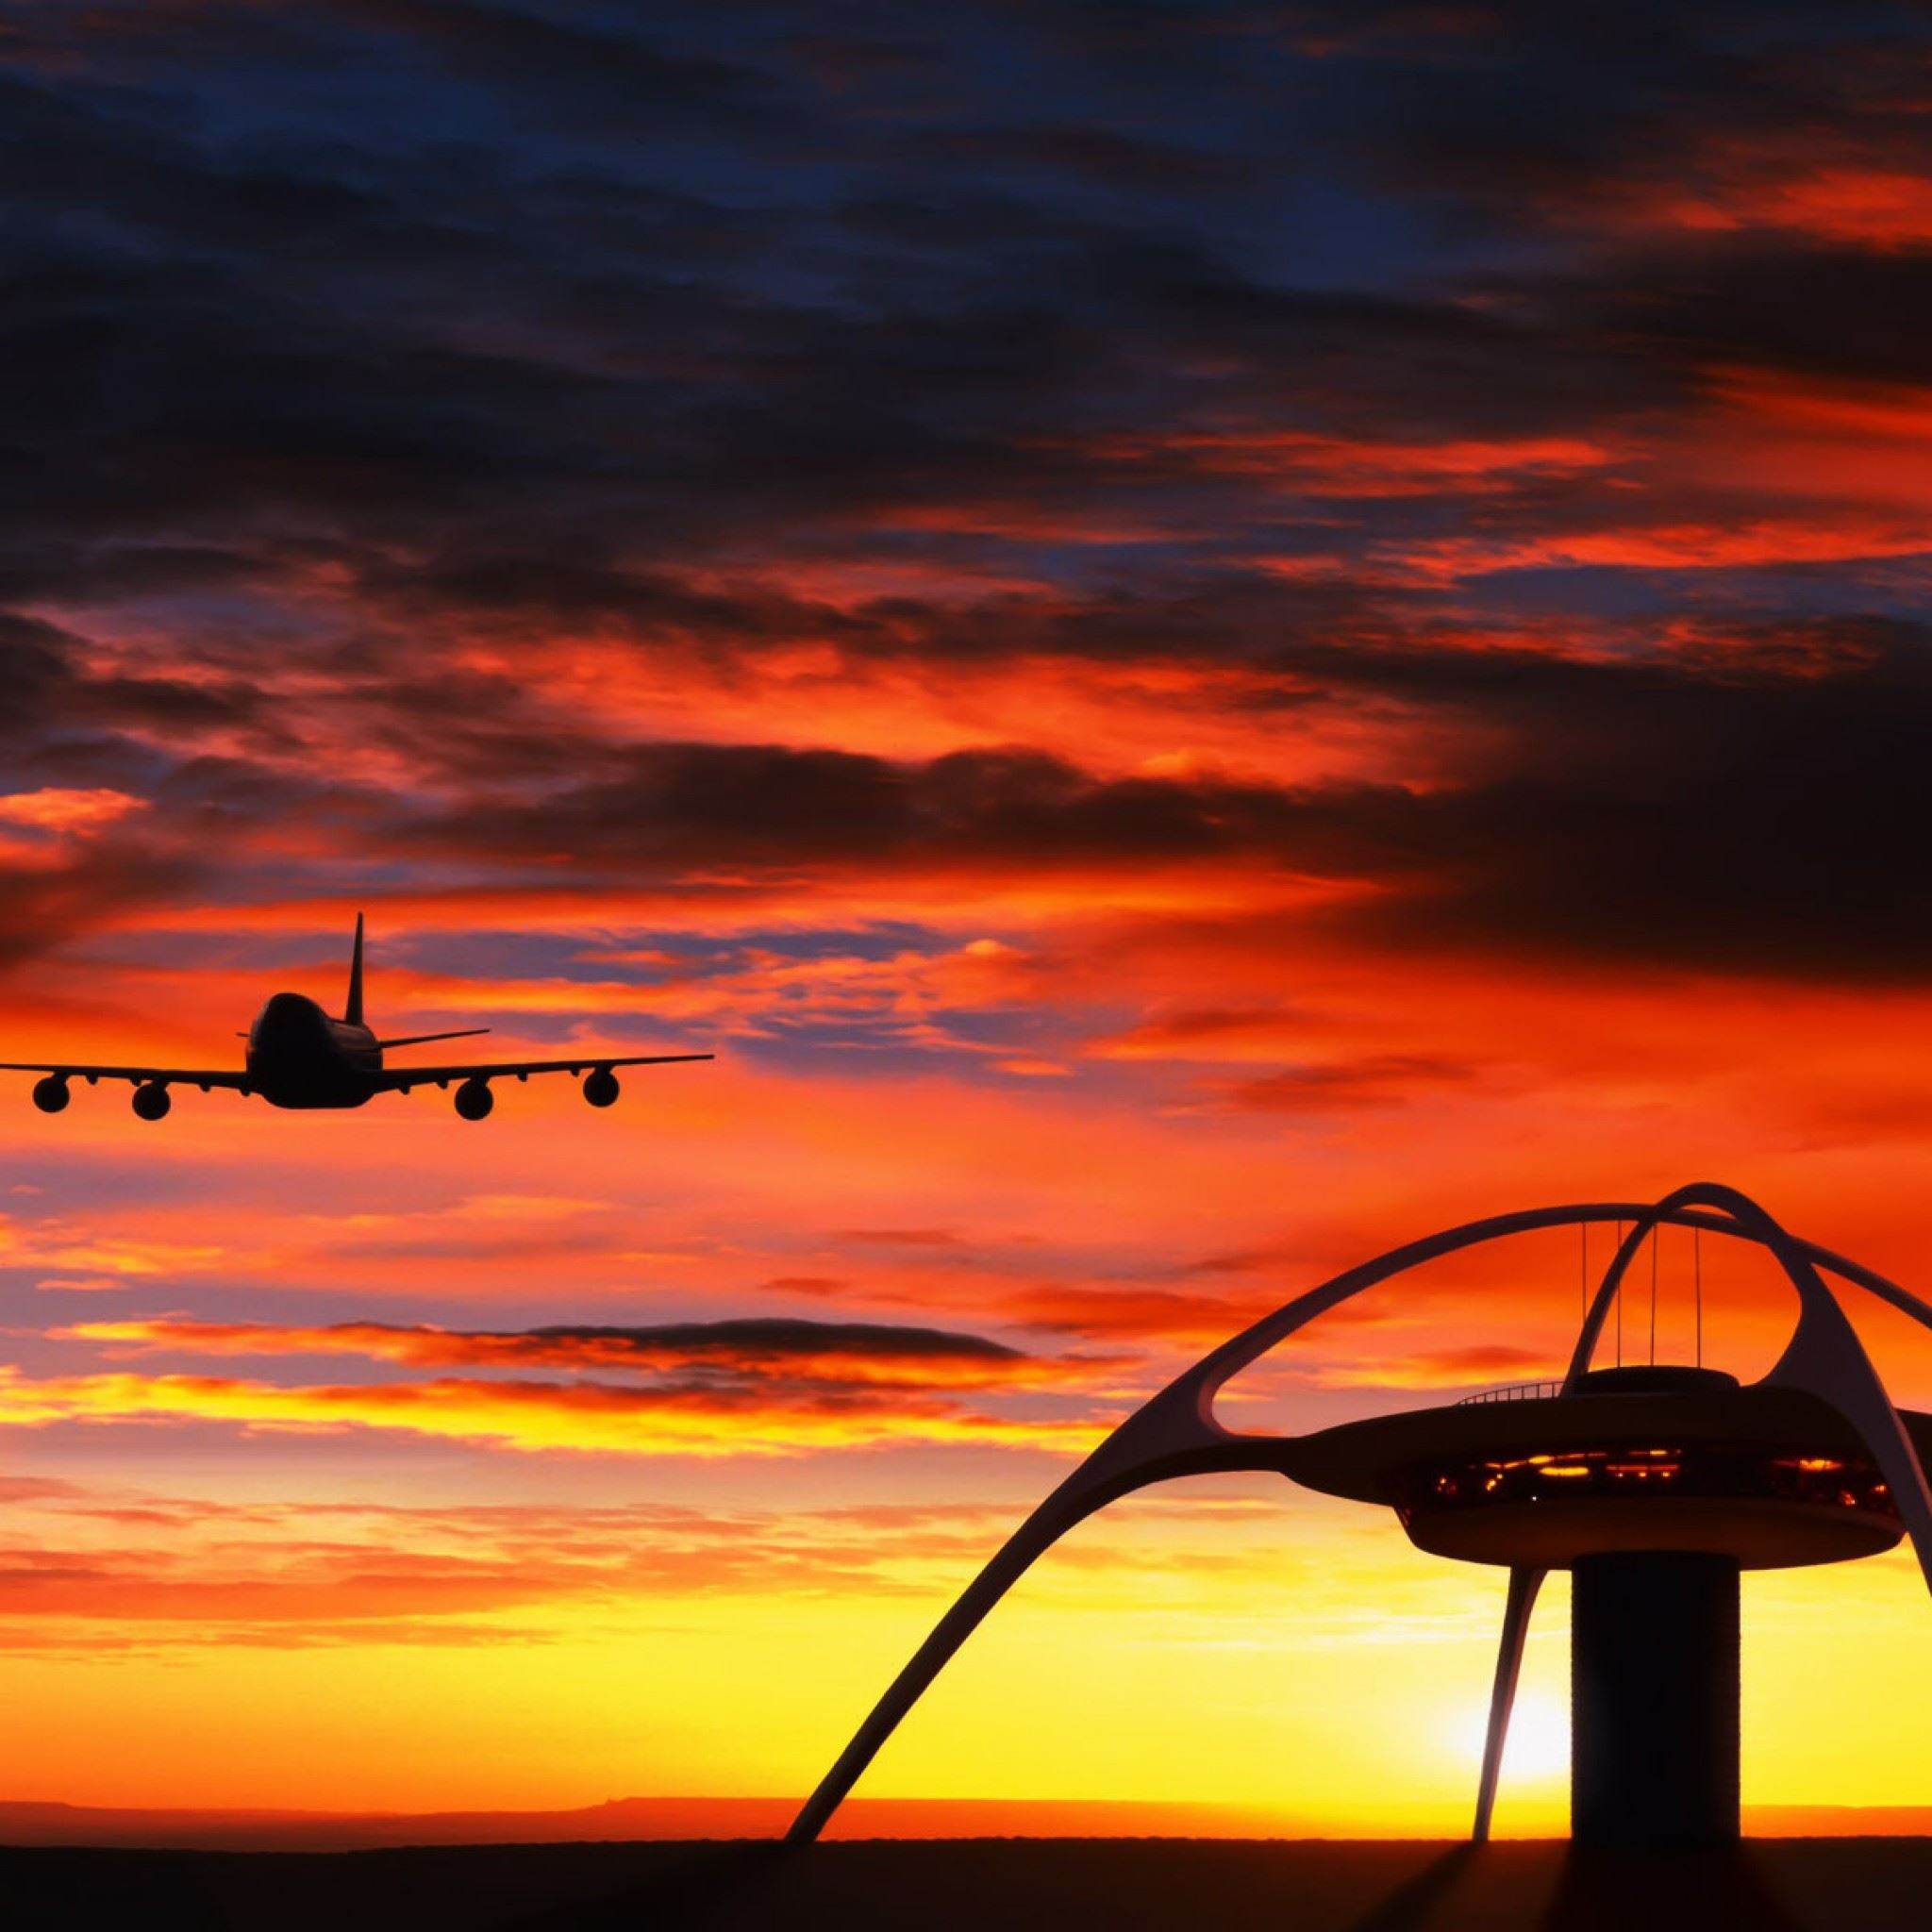 Landing Plane Sunset iPad Air wallpaper 